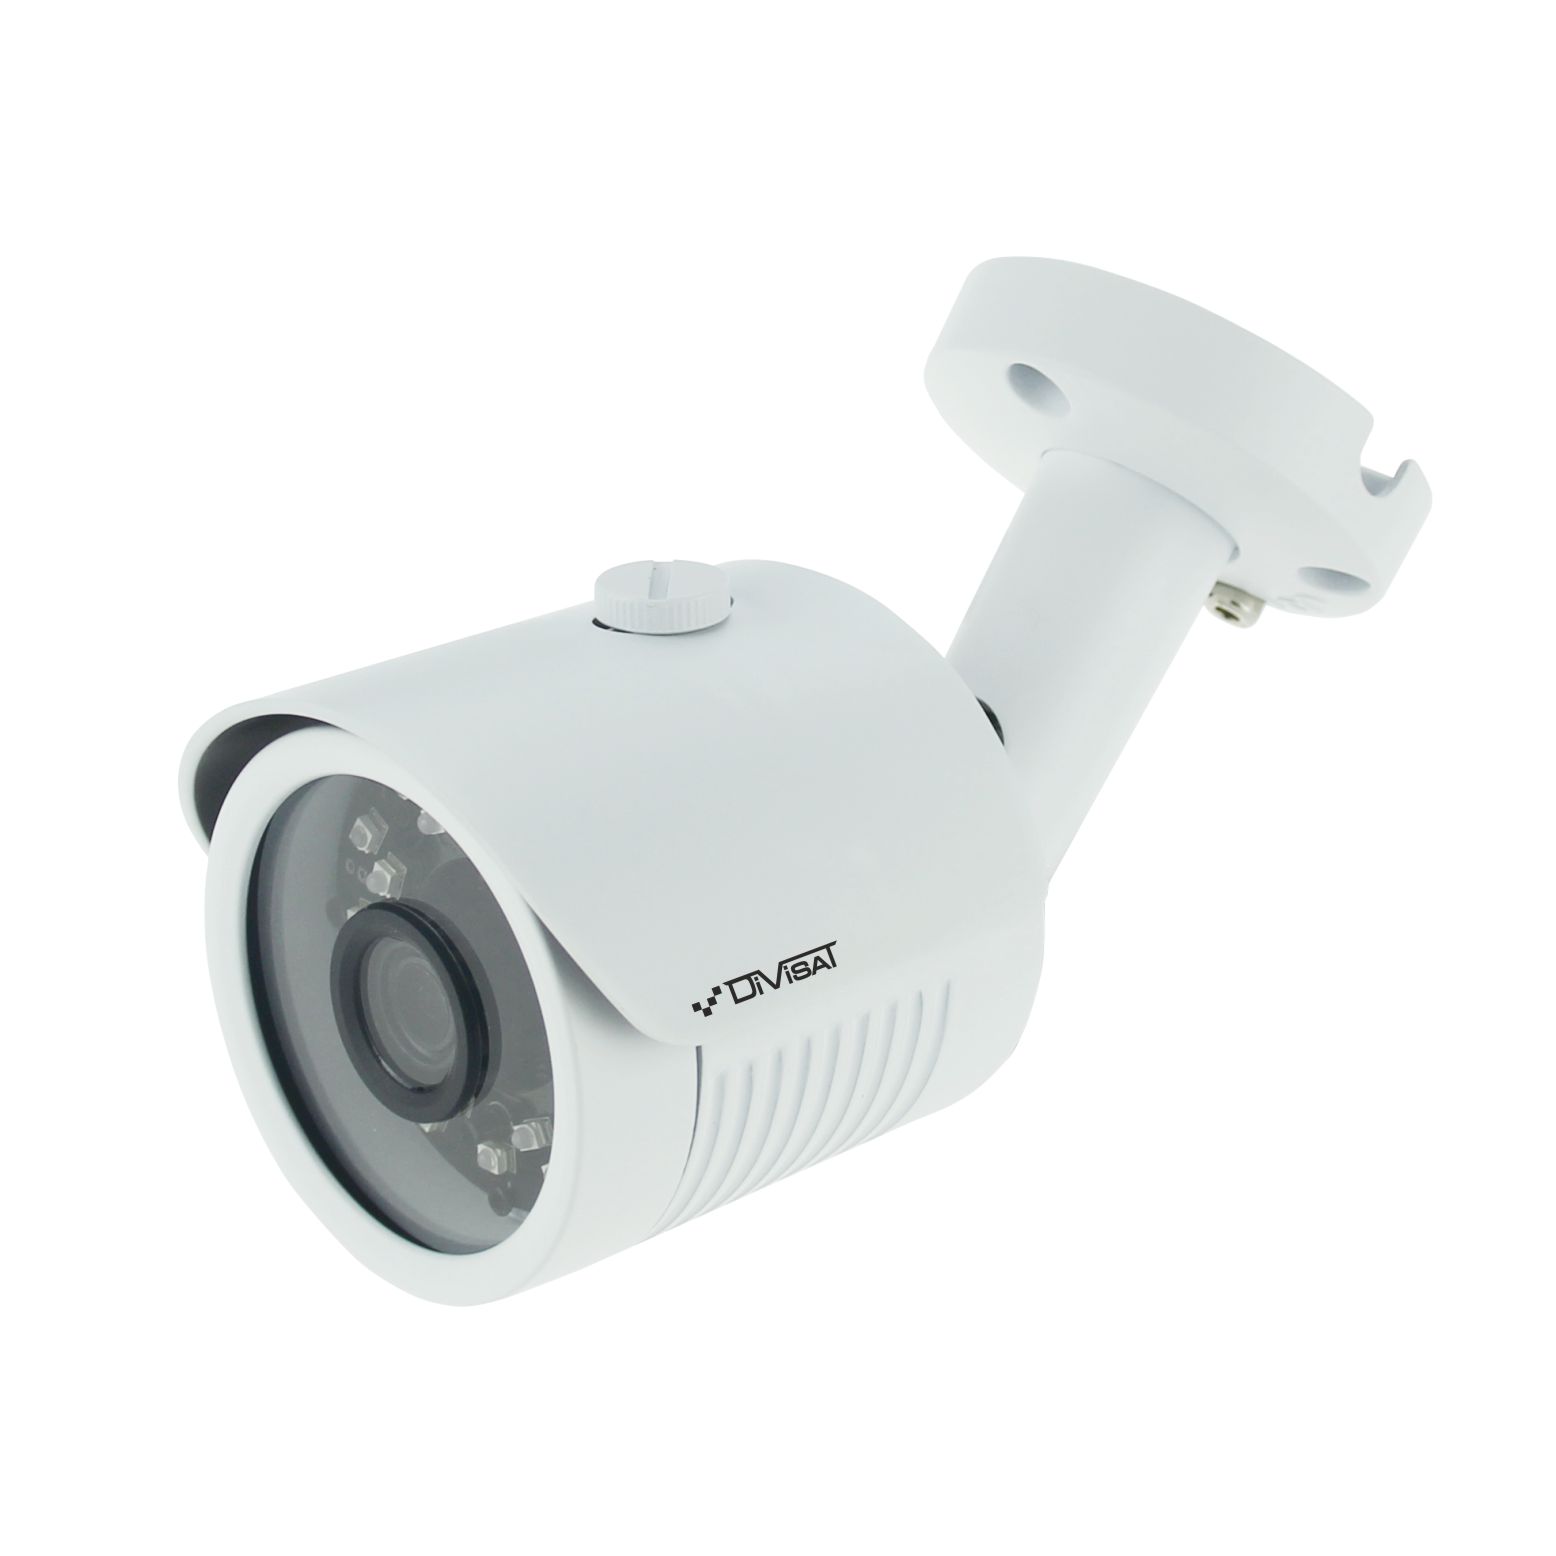 DVI-S121 ver. 2.0 2.8 (2Mpix, ИК до 20м) уличная IP камера системы видеонаблюдения DiviSat